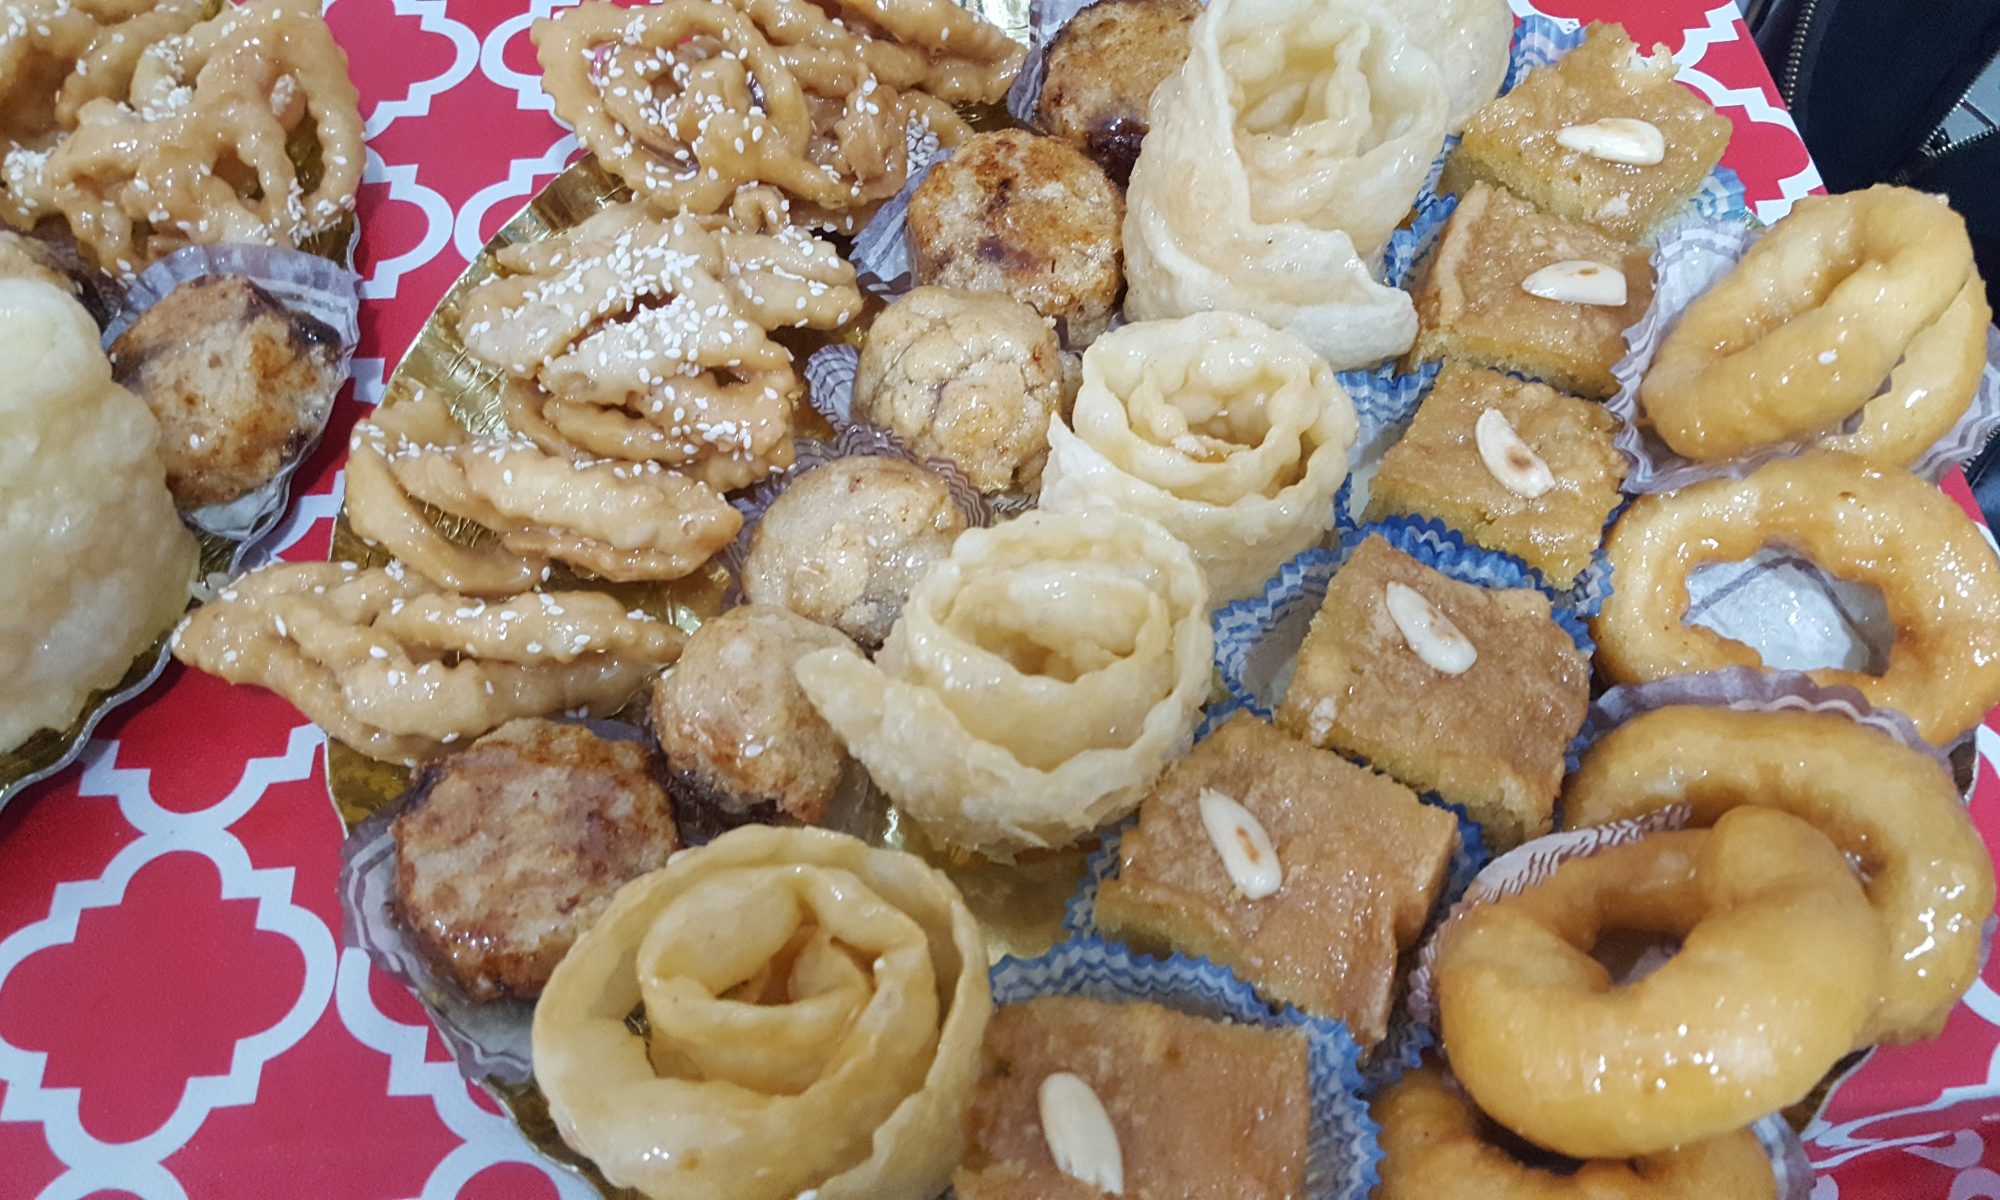 עוגיות מרוקאיות ותוניסאיות לכבוד קריאת הזוהר בערב הברית של הבן של קרין : סופגניות יויו, חריסה, פיזואלה/פזואלוס, מקרוד, שבקיה.